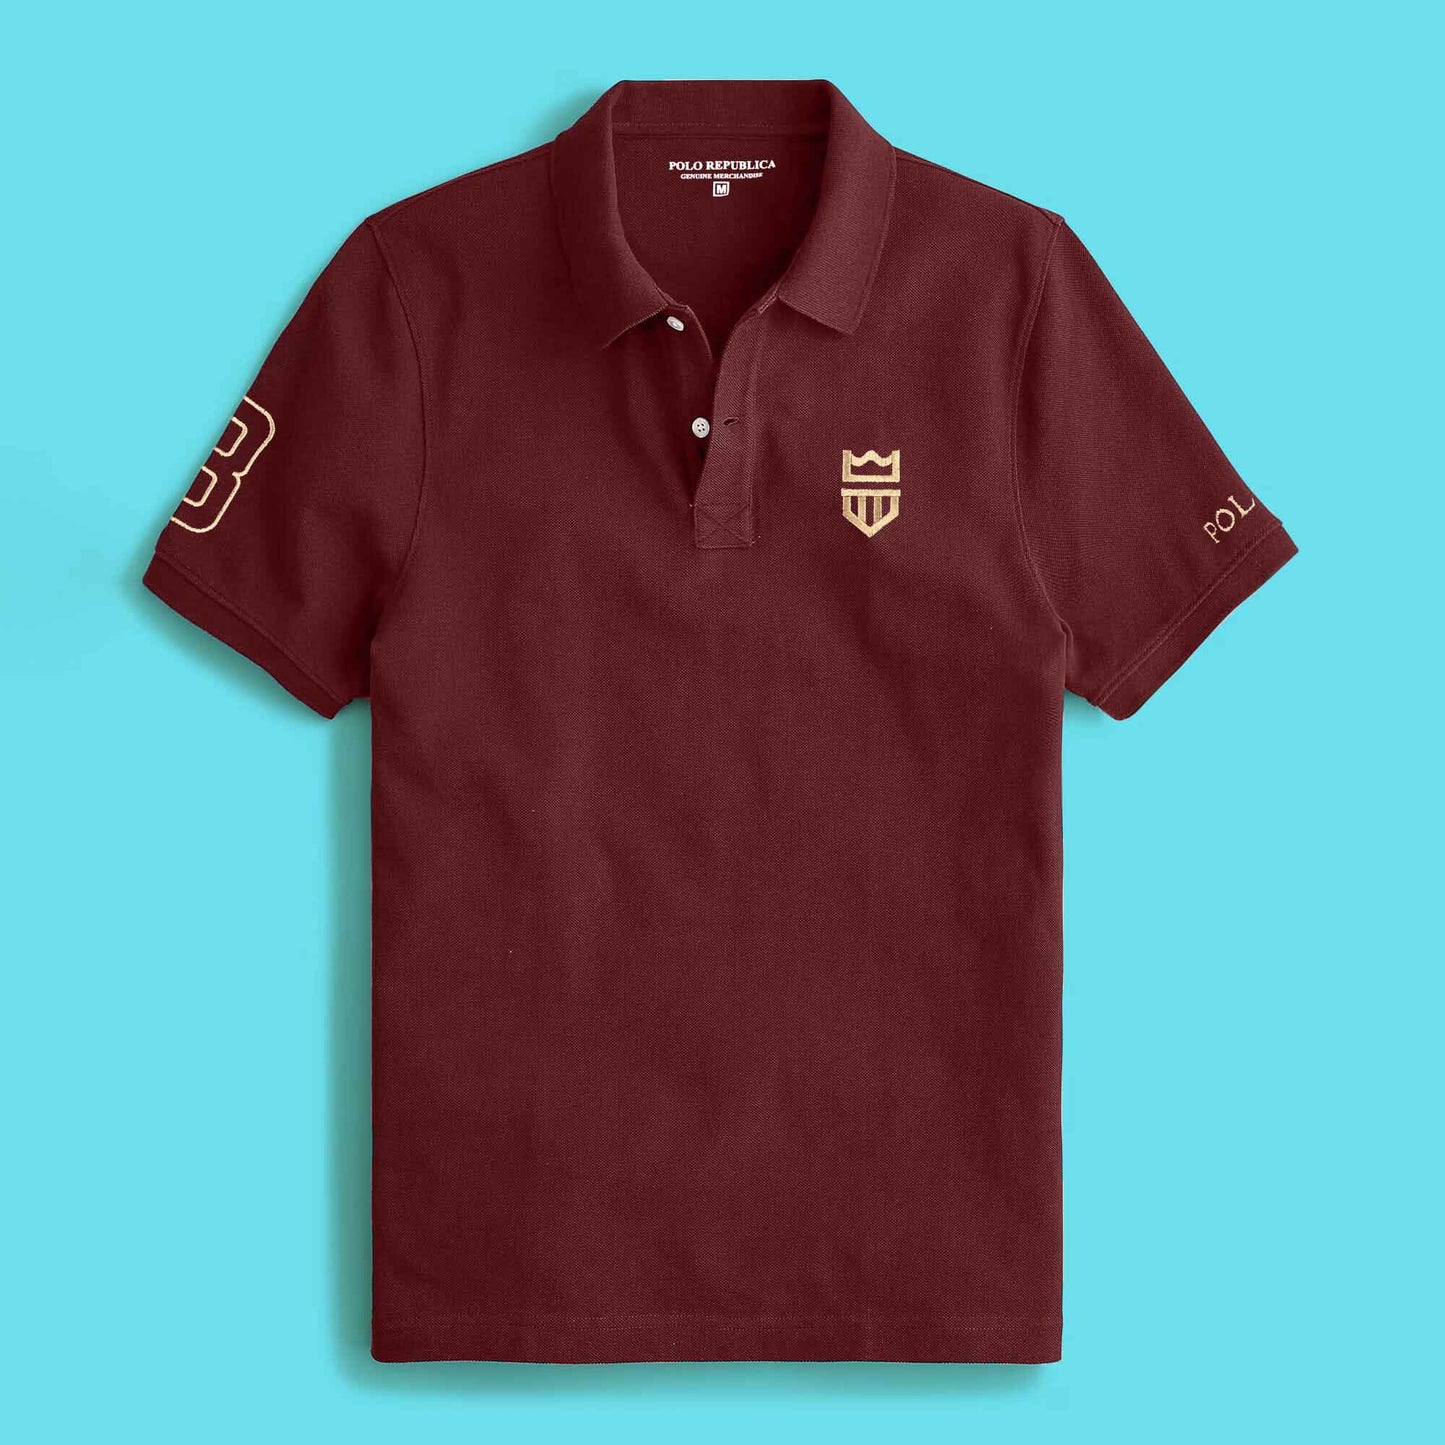 Polo Republica Men's Crest 8 & Polo Embroidered Short Sleeve Polo Shirt Men's Polo Shirt Polo Republica 